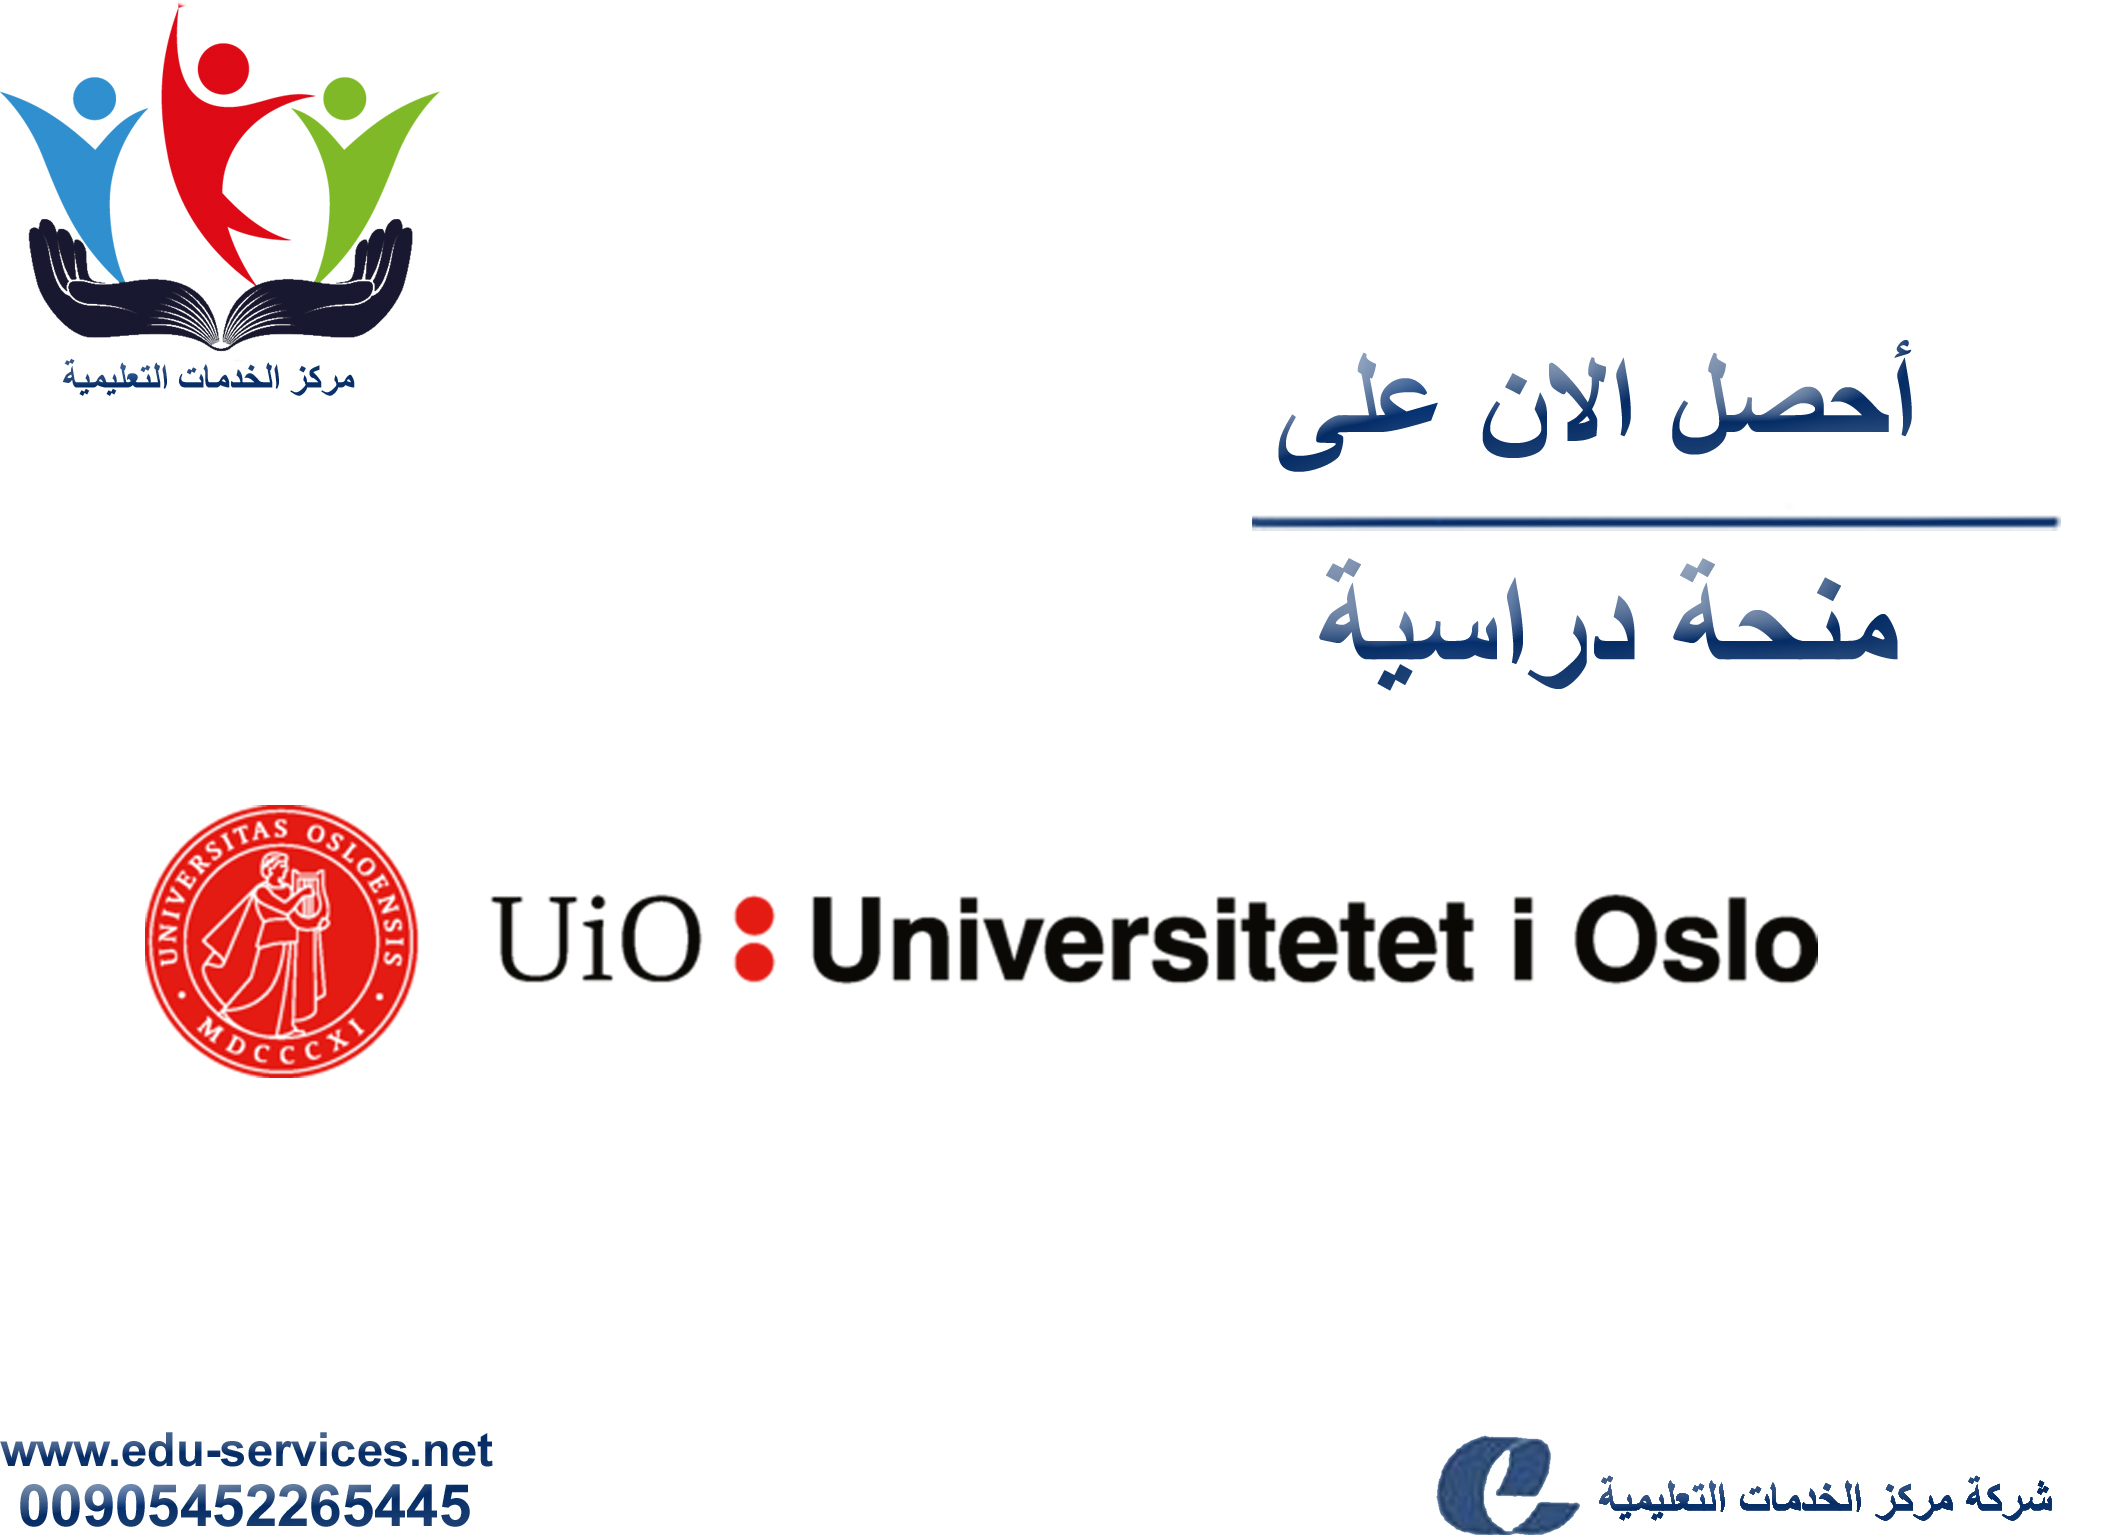 منحة University of Oslo لبحوث ما بعد الدكتوراه في النرويج أوسلو للعام 2018-2019